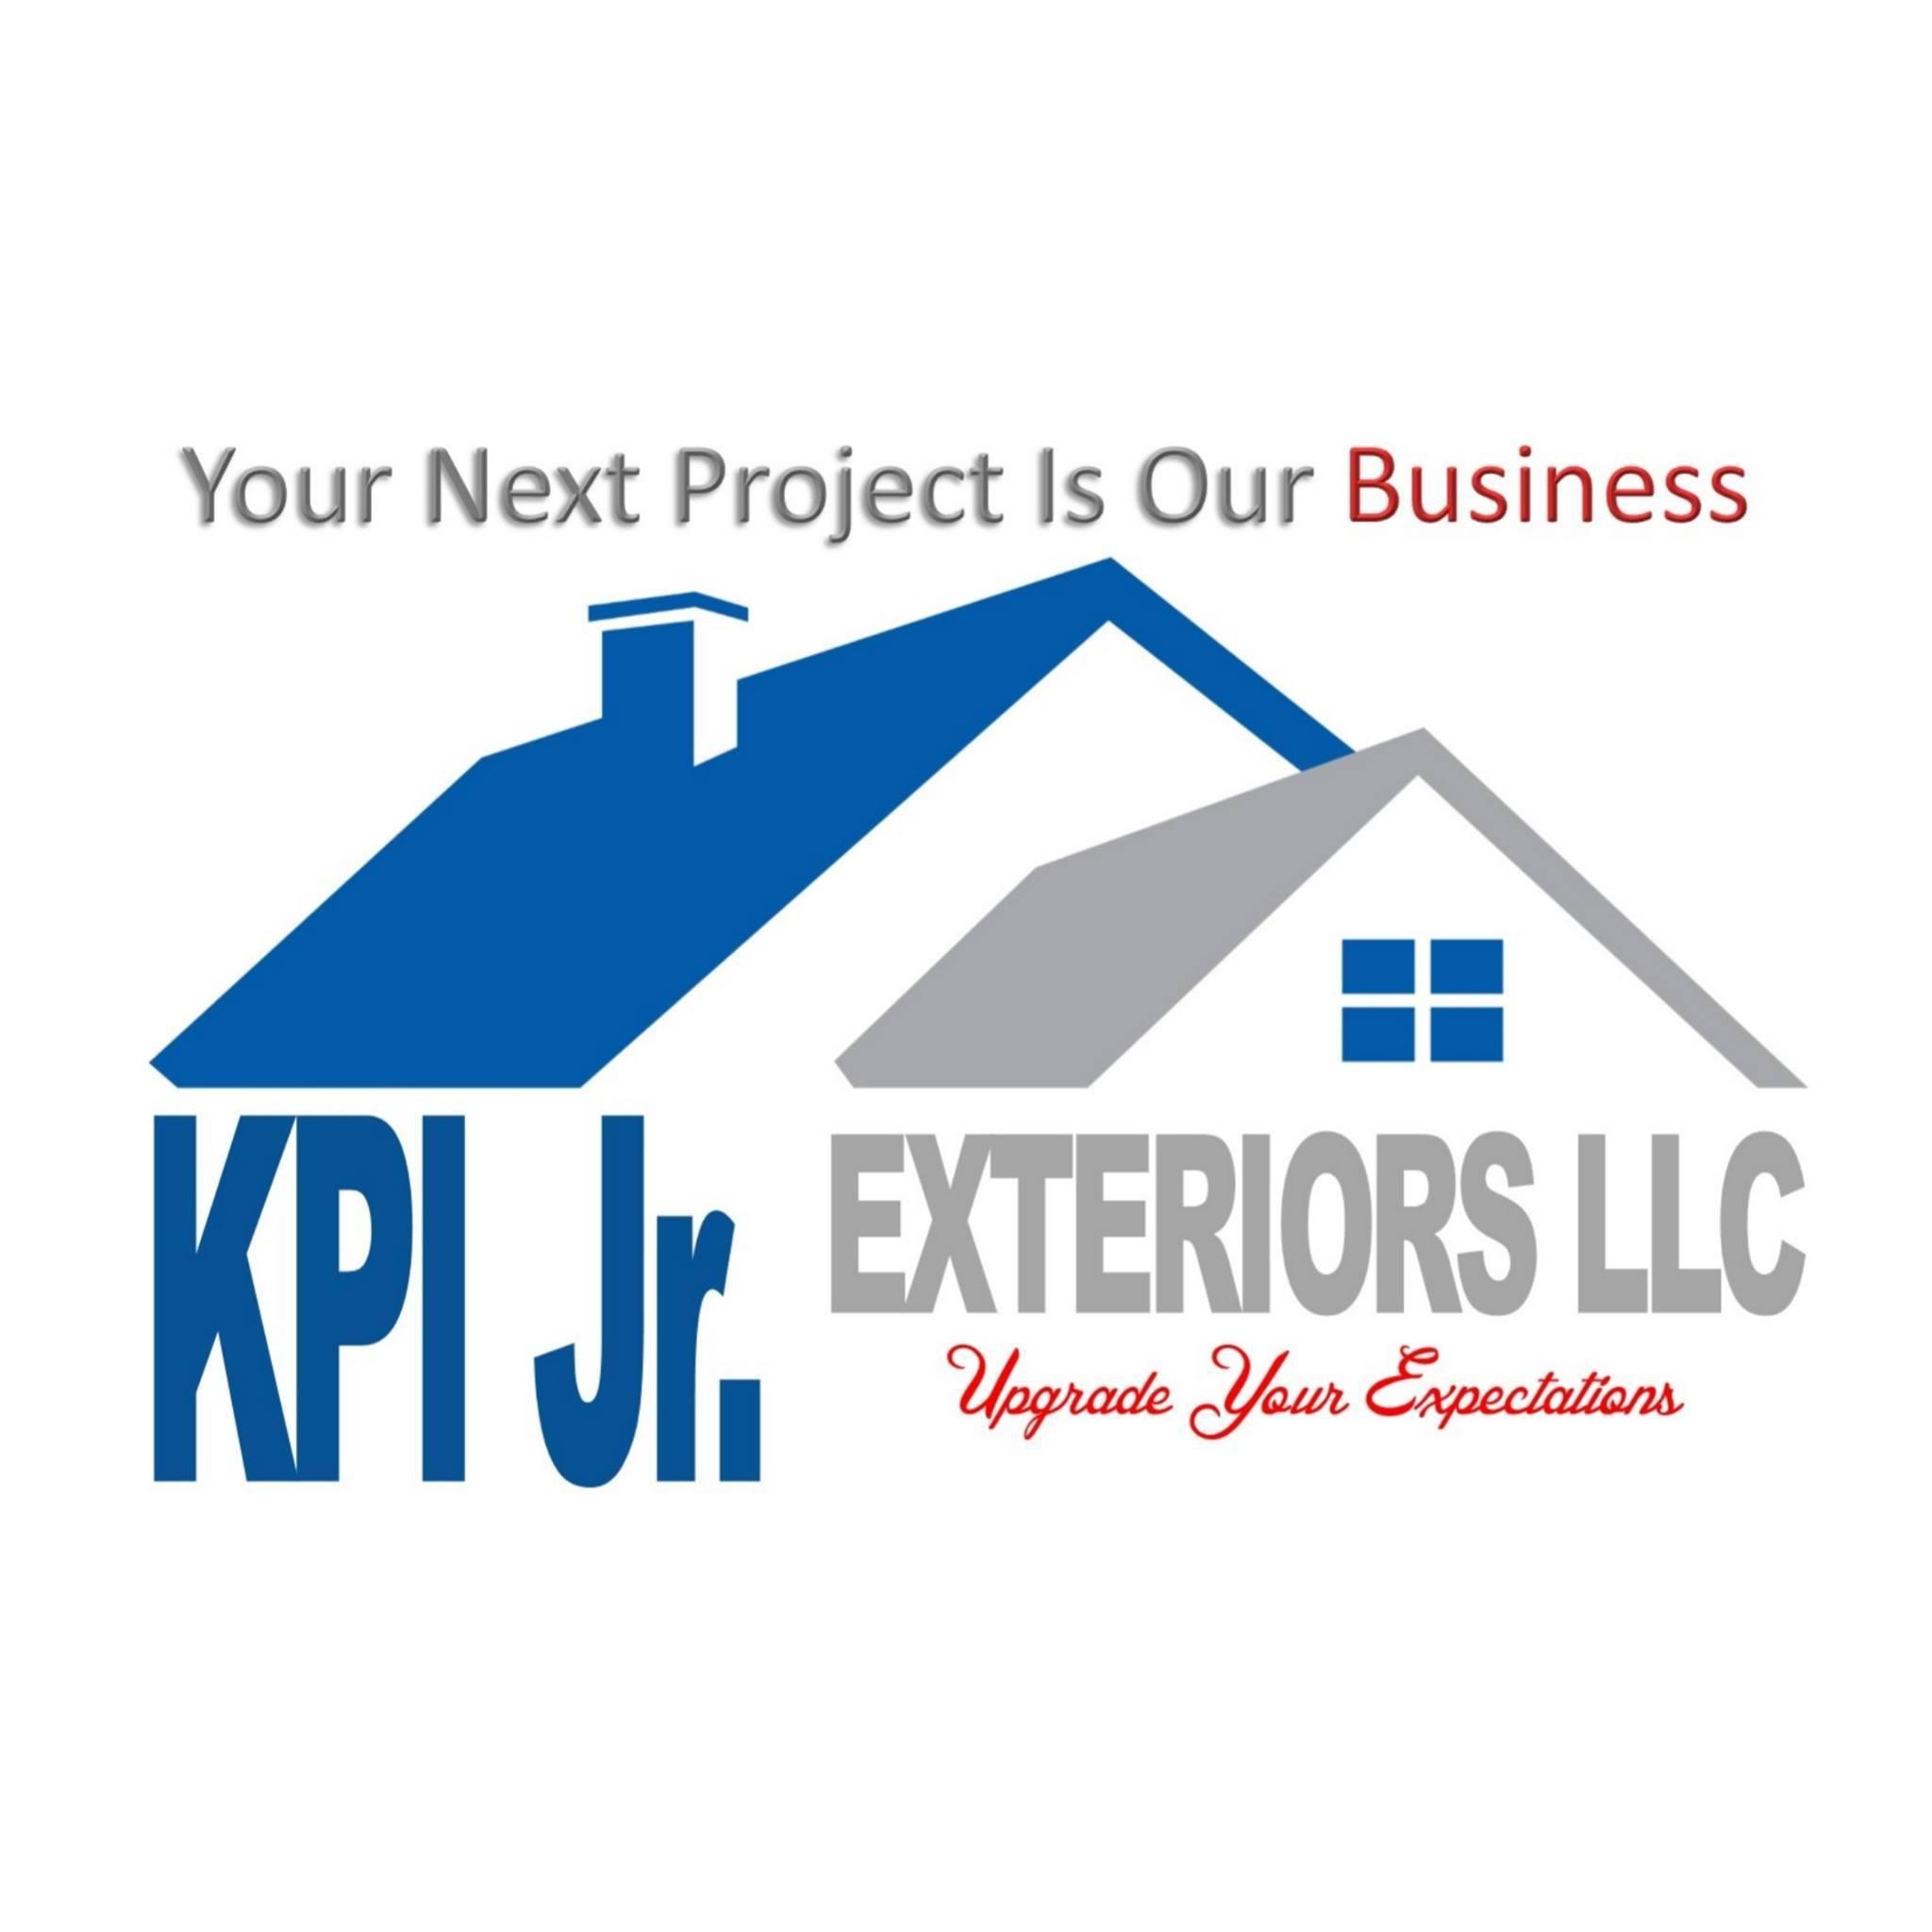 KPI Jr. Exteriors LLC